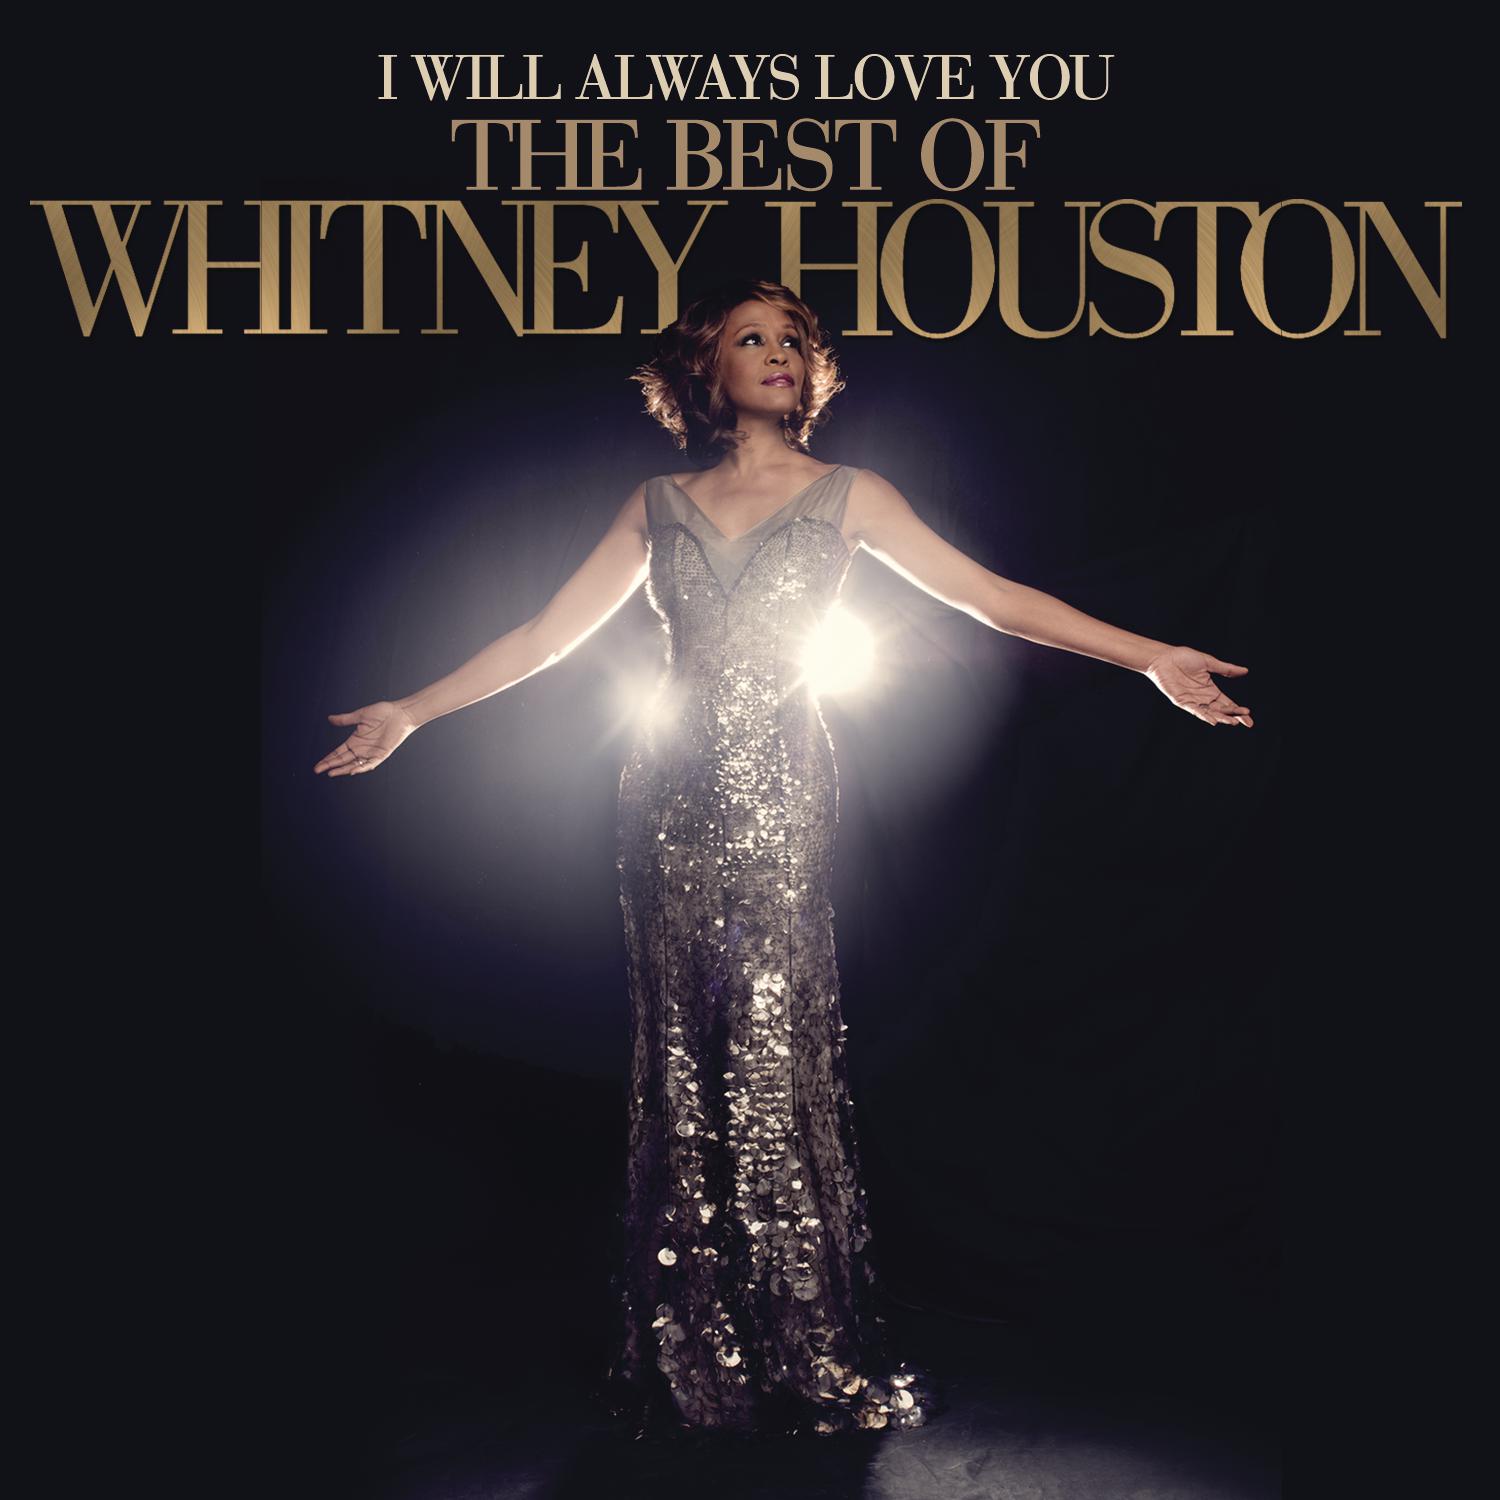 http://3.bp.blogspot.com/-hC1fKVvgc-M/UKFXSVqKD6I/AAAAAAAAFns/vmkJZTYZXjA/s1600/Whitney+Houston++-+I+Will+Always+Love+You+The+Best+Of+Whitney+Houston+(2012).jpg